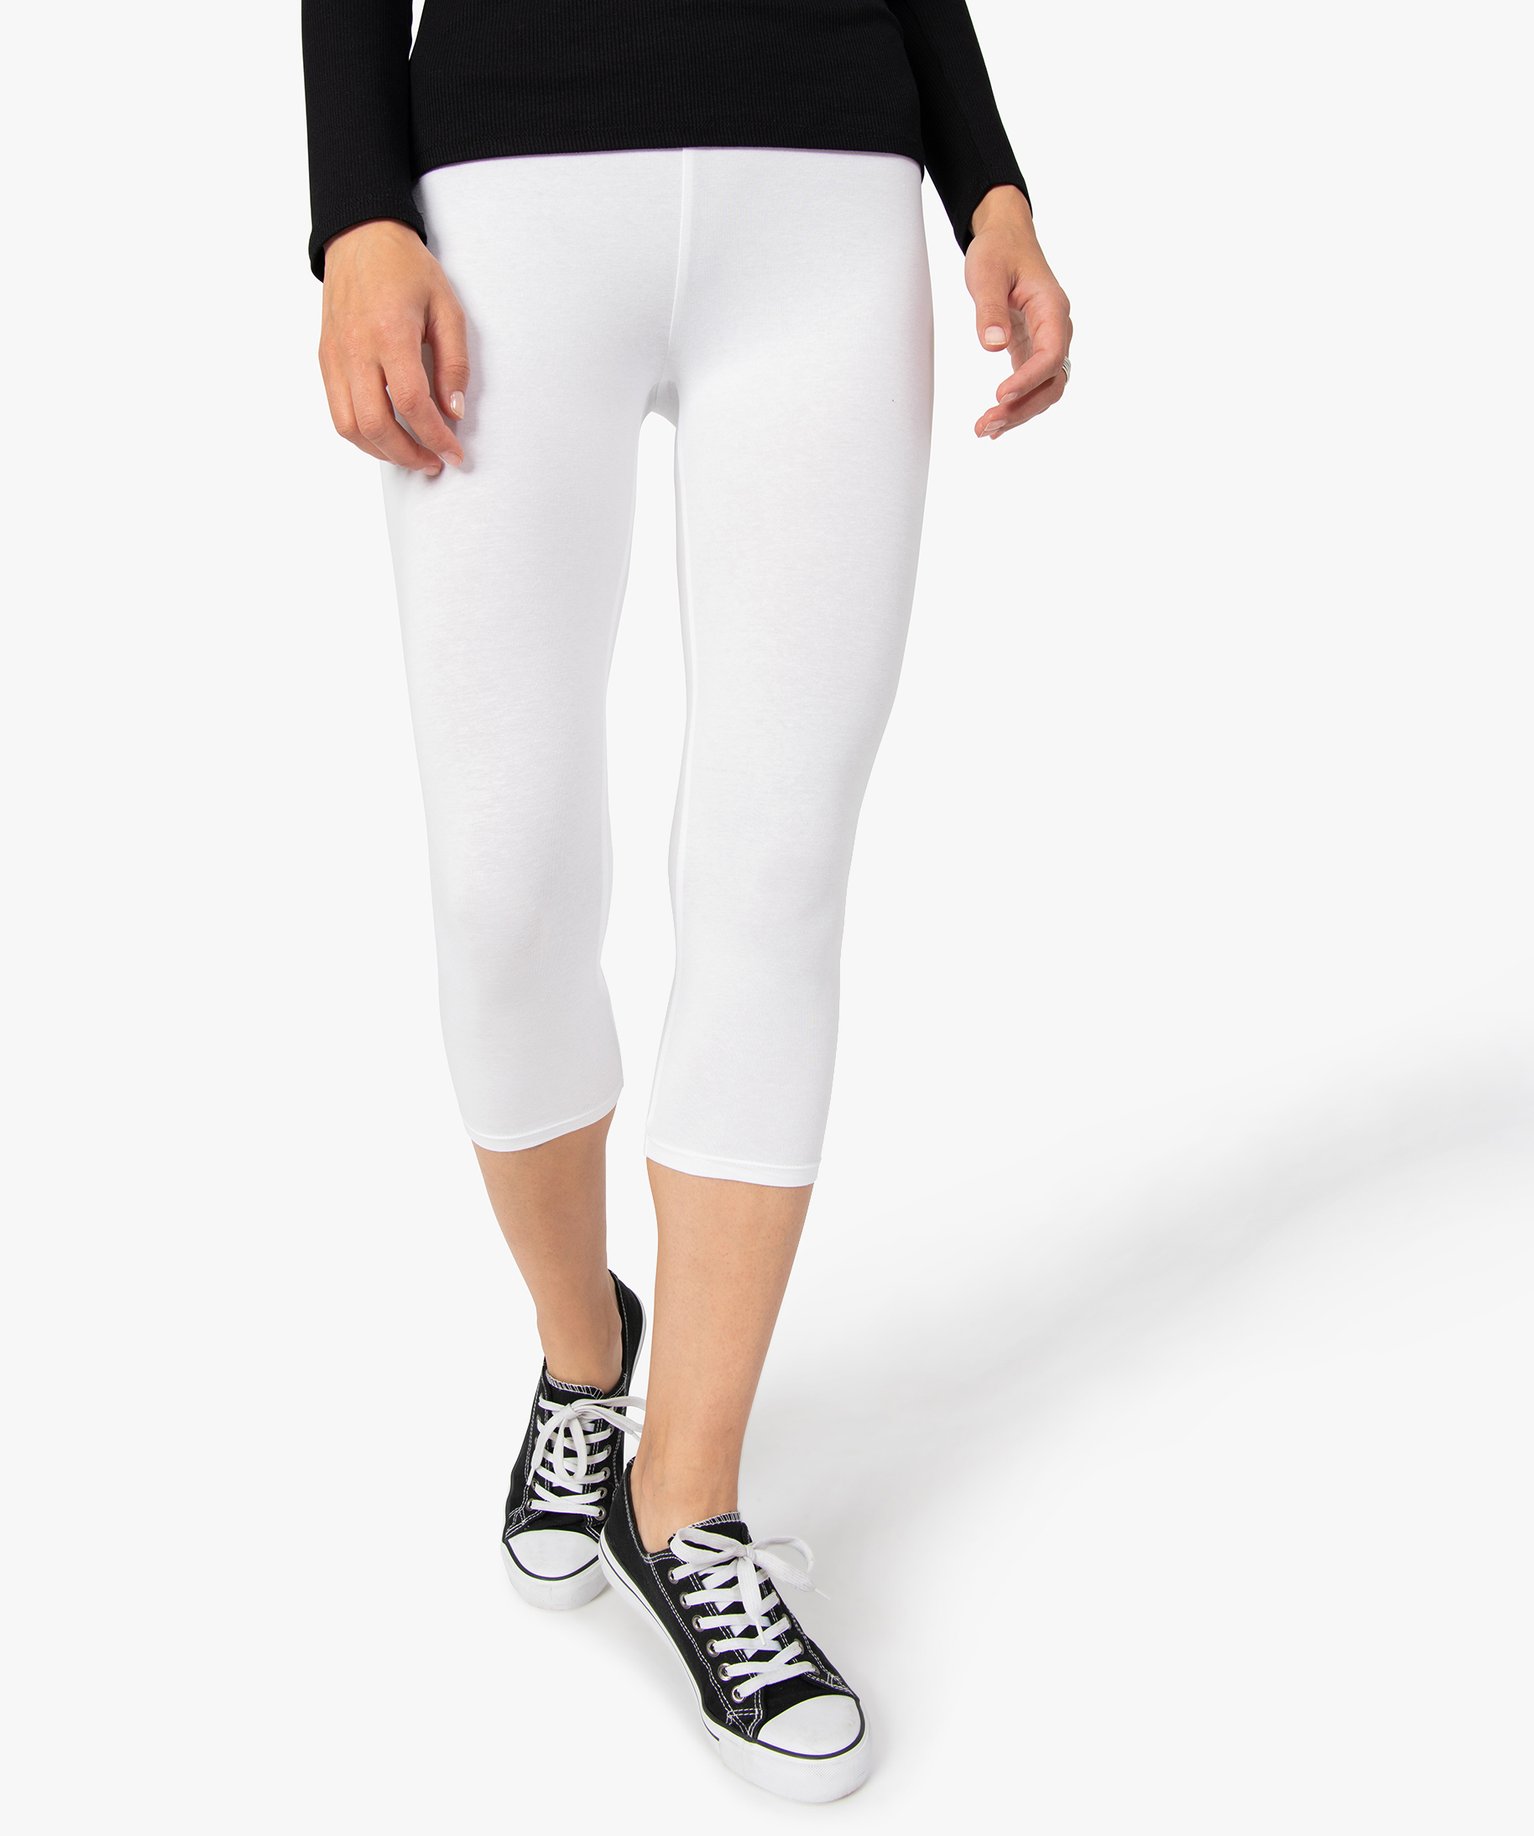 leggings femme contenant du coton bio longueur mollet blanc